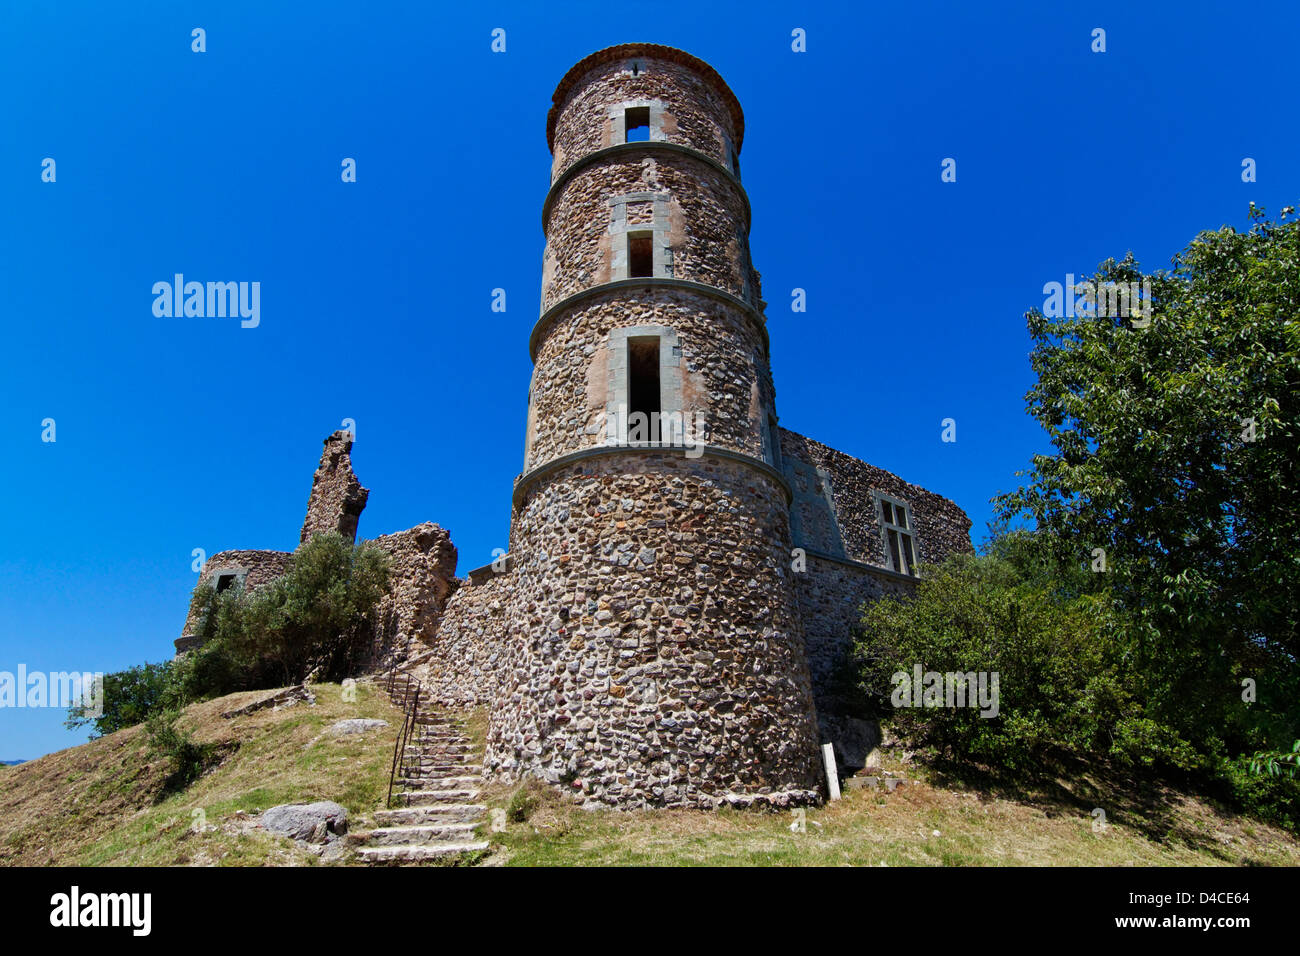 Rovina del castello, Grimaud, Alpes-Cote d'Azur, Provence, Francia Foto Stock